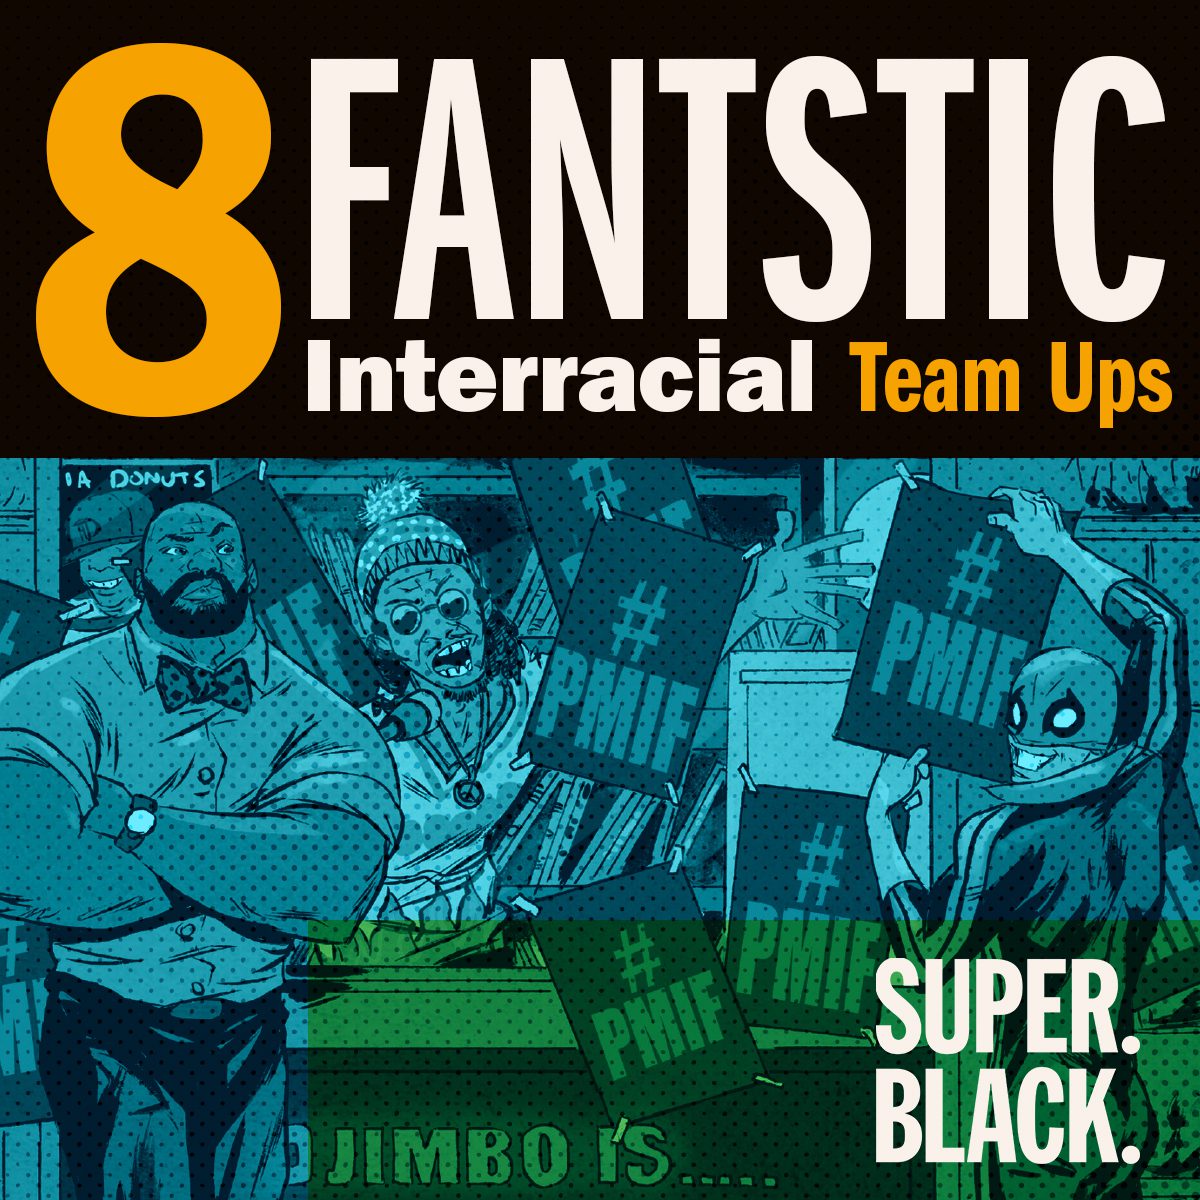 8 Fantastic Interracial Team Ups - Super. Black.